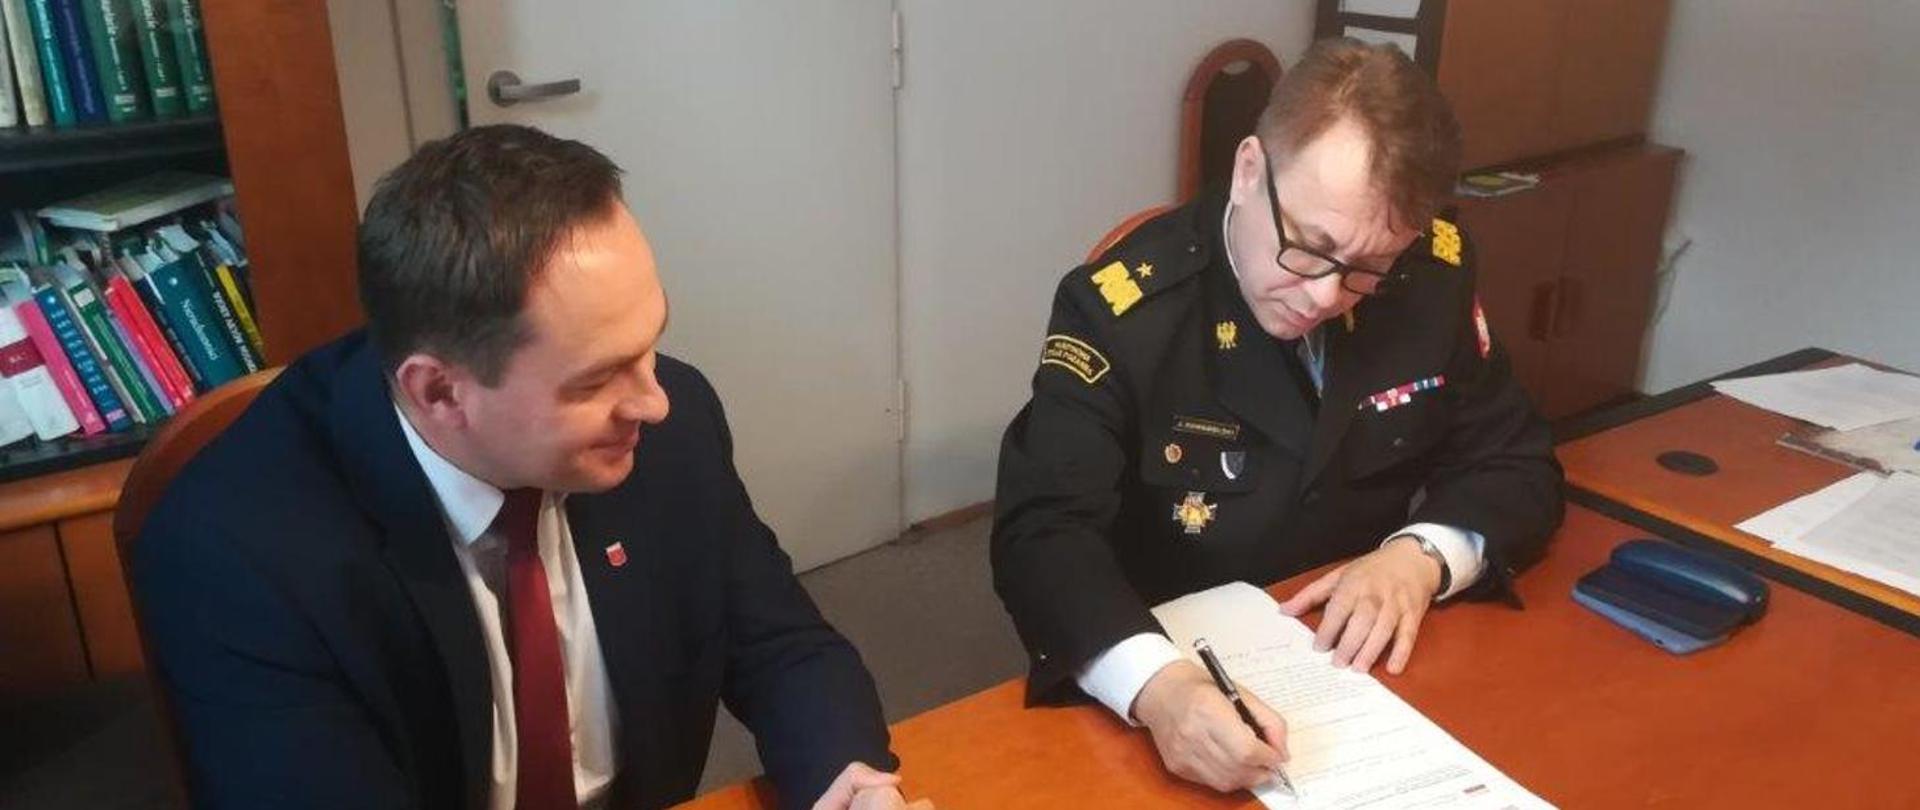 Podpisanie aktu notarialnego - posterunek JRG Maciejowice